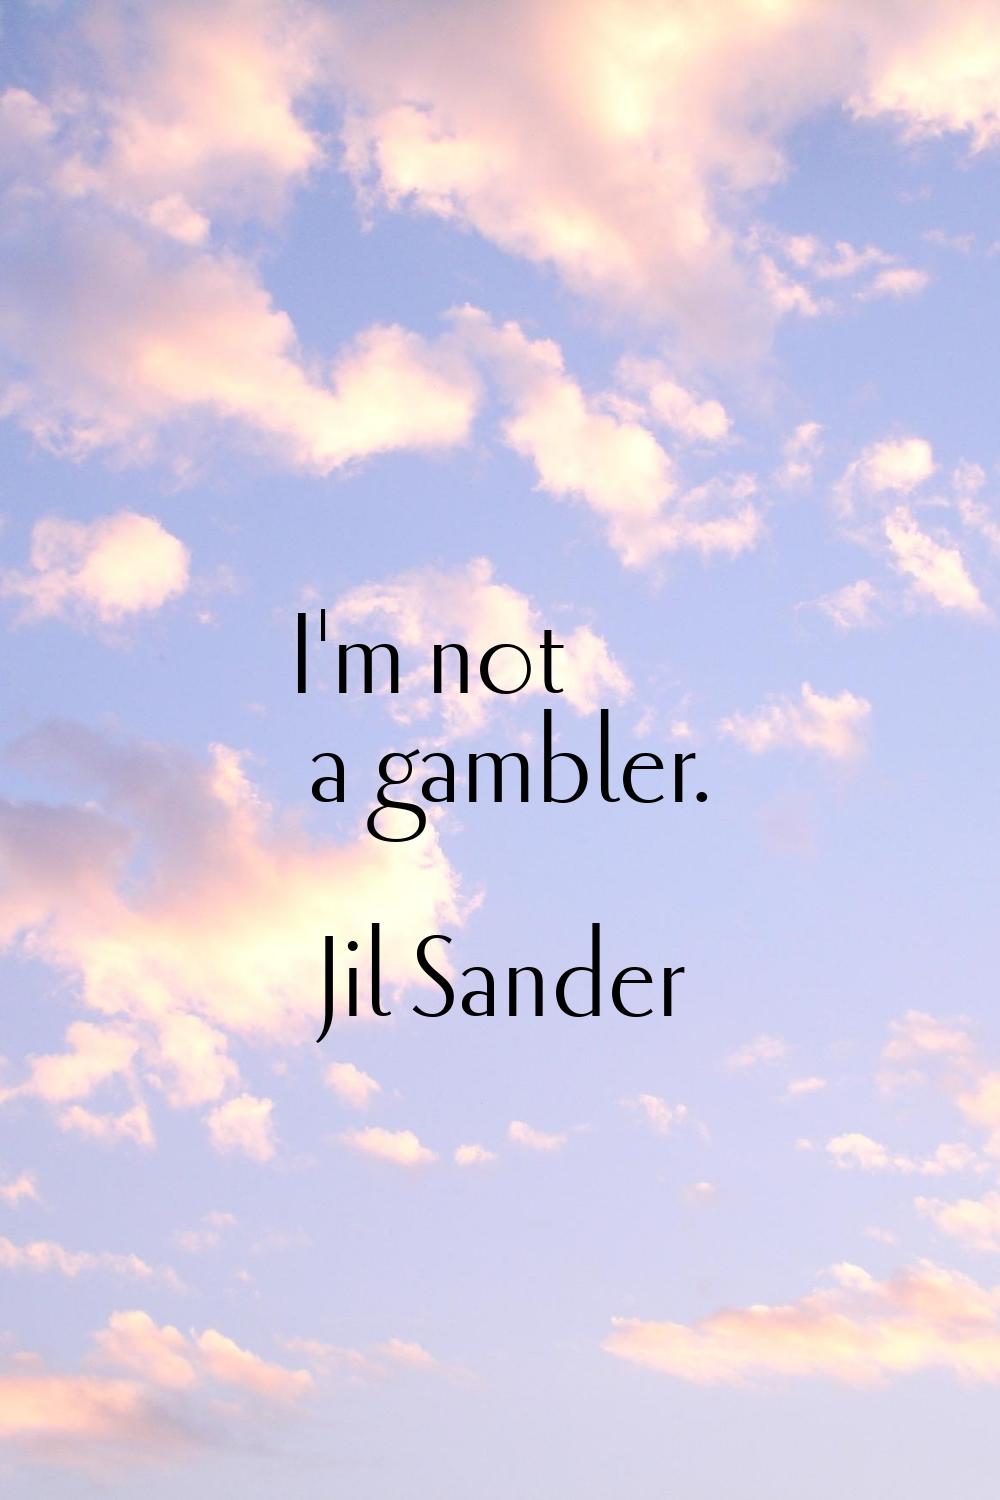 I'm not a gambler.